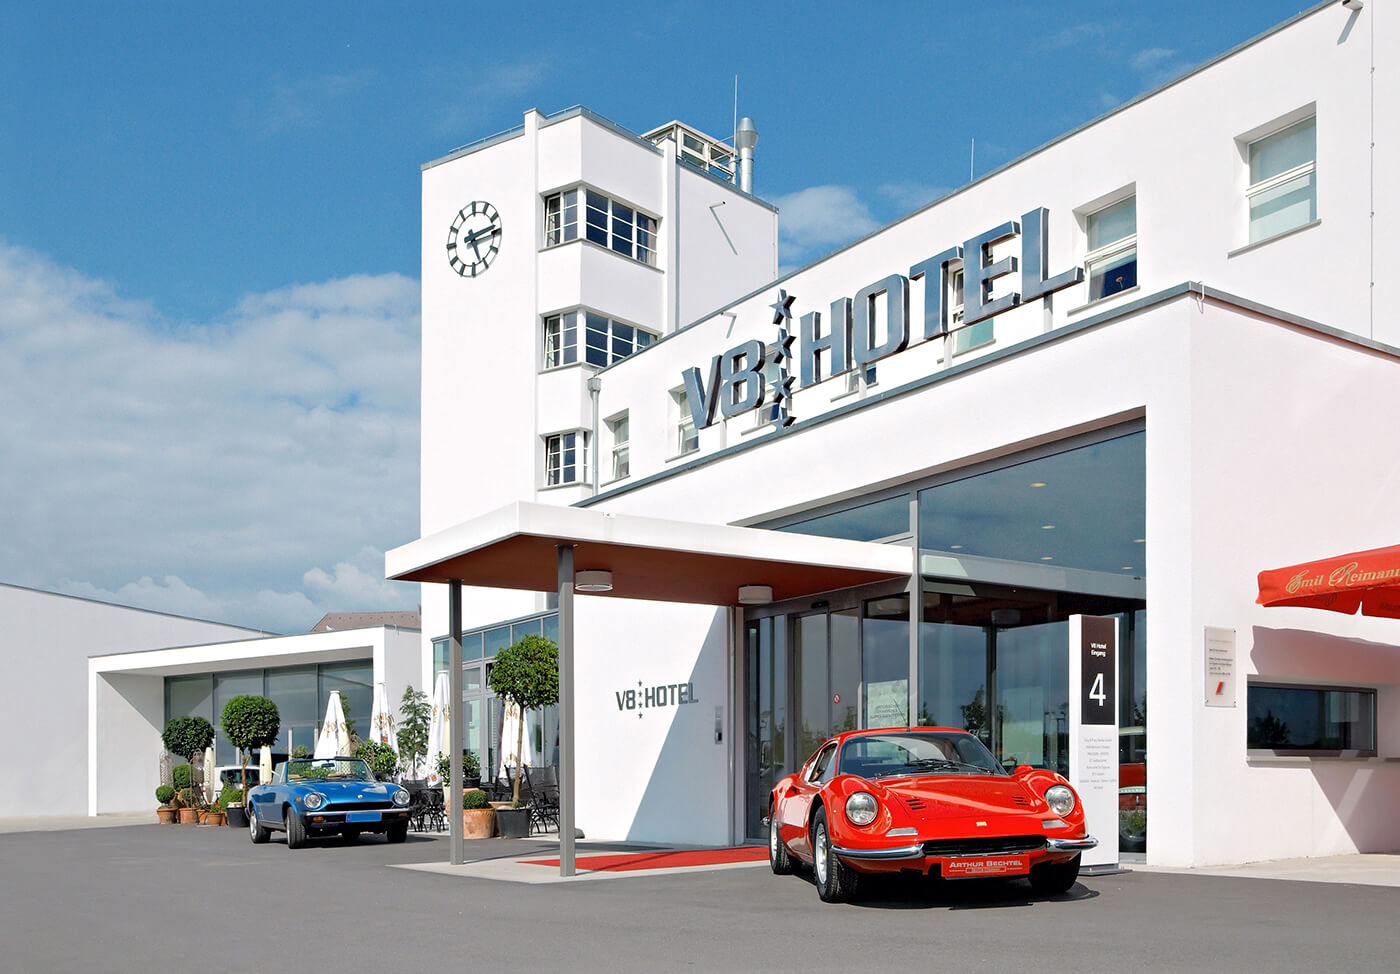 Khám phá V8 Hotel: Ngủ trên giường Mercedes-Benz, BMW, xung quanh toàn đồ cho hội cuồng xe - Ảnh 16.